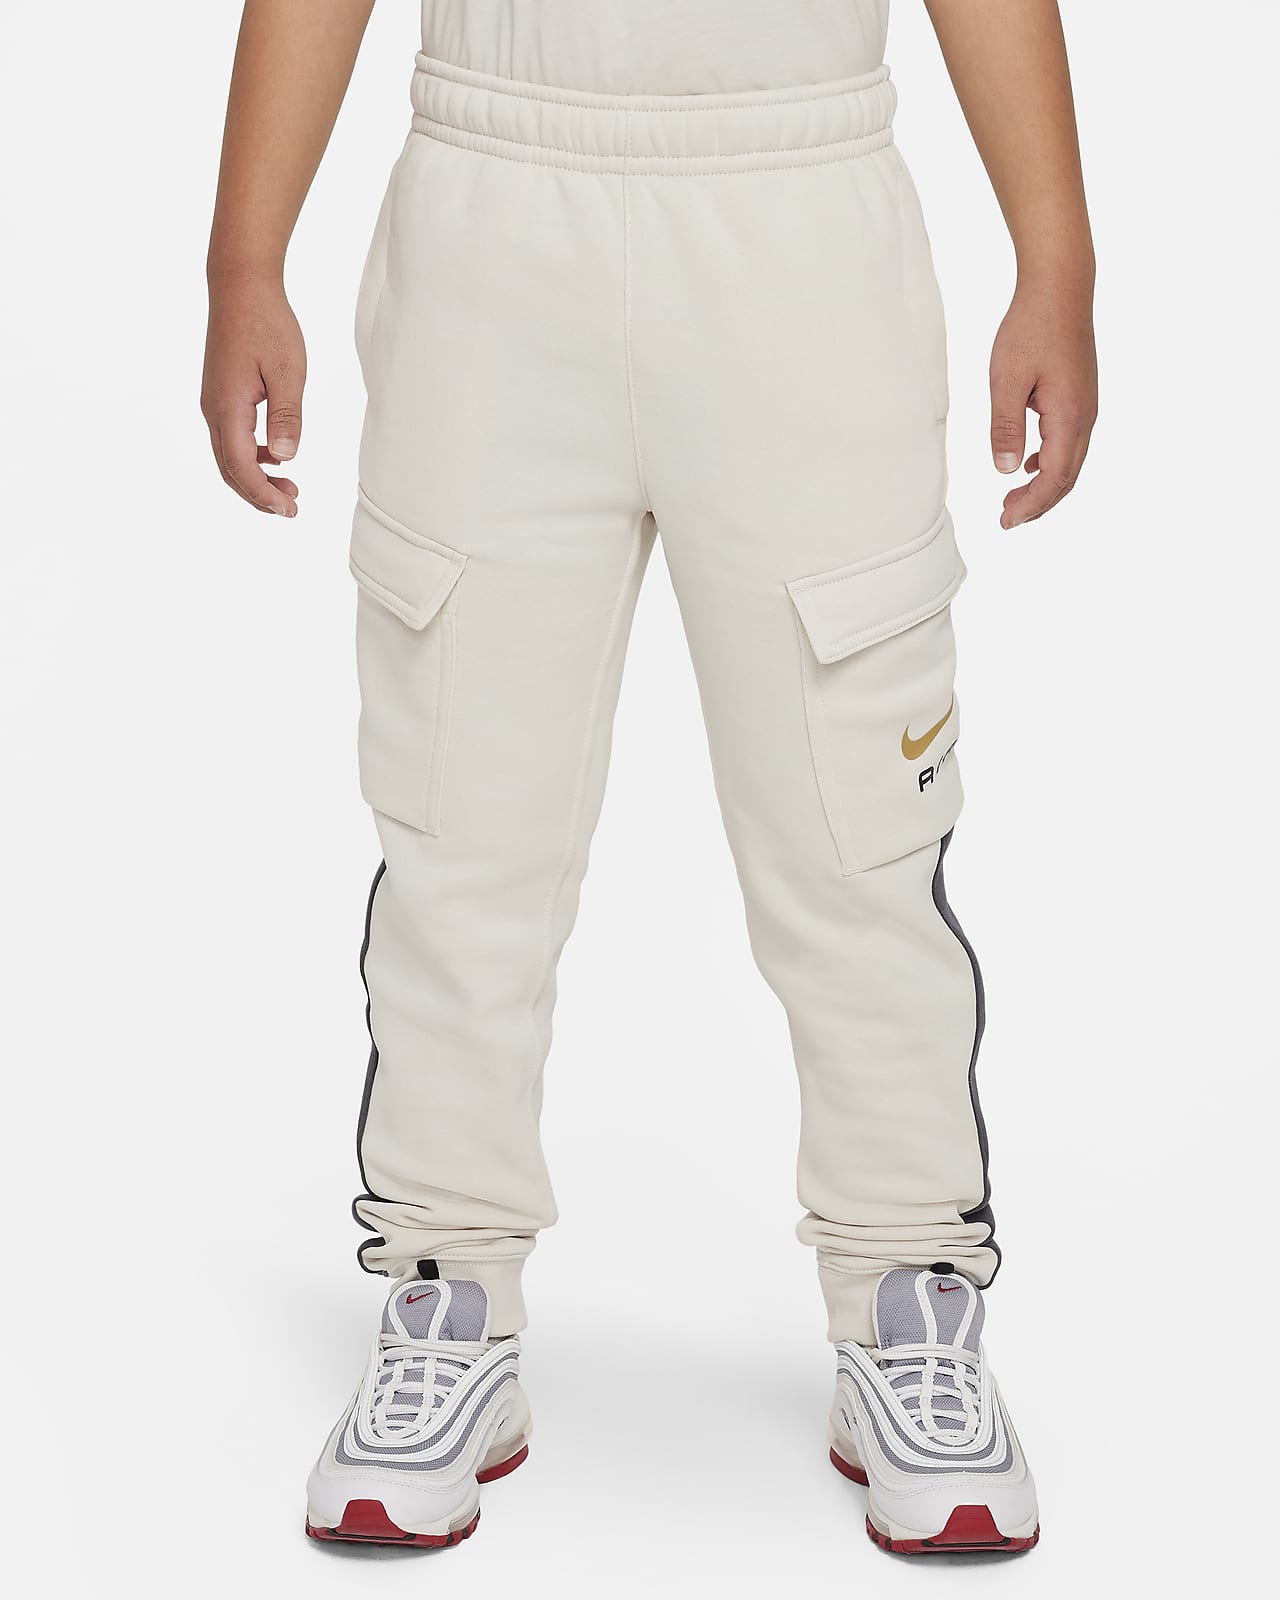 Pantaloni cargo in fleece Nike Air – Ragazzo/a